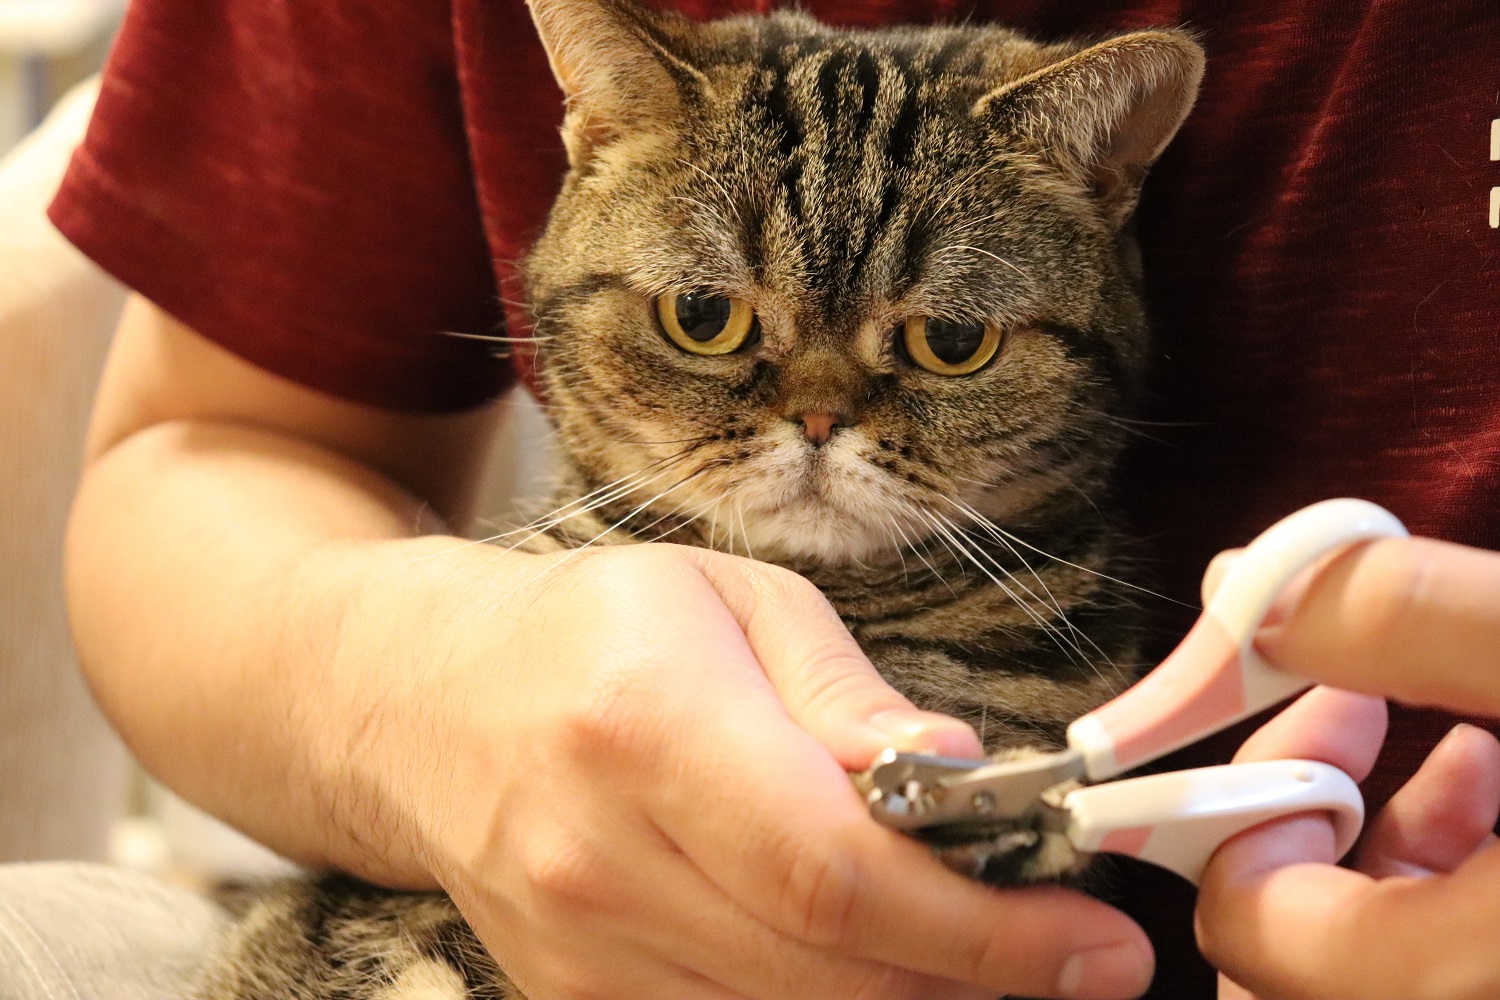 Cat staring at cutting nails.